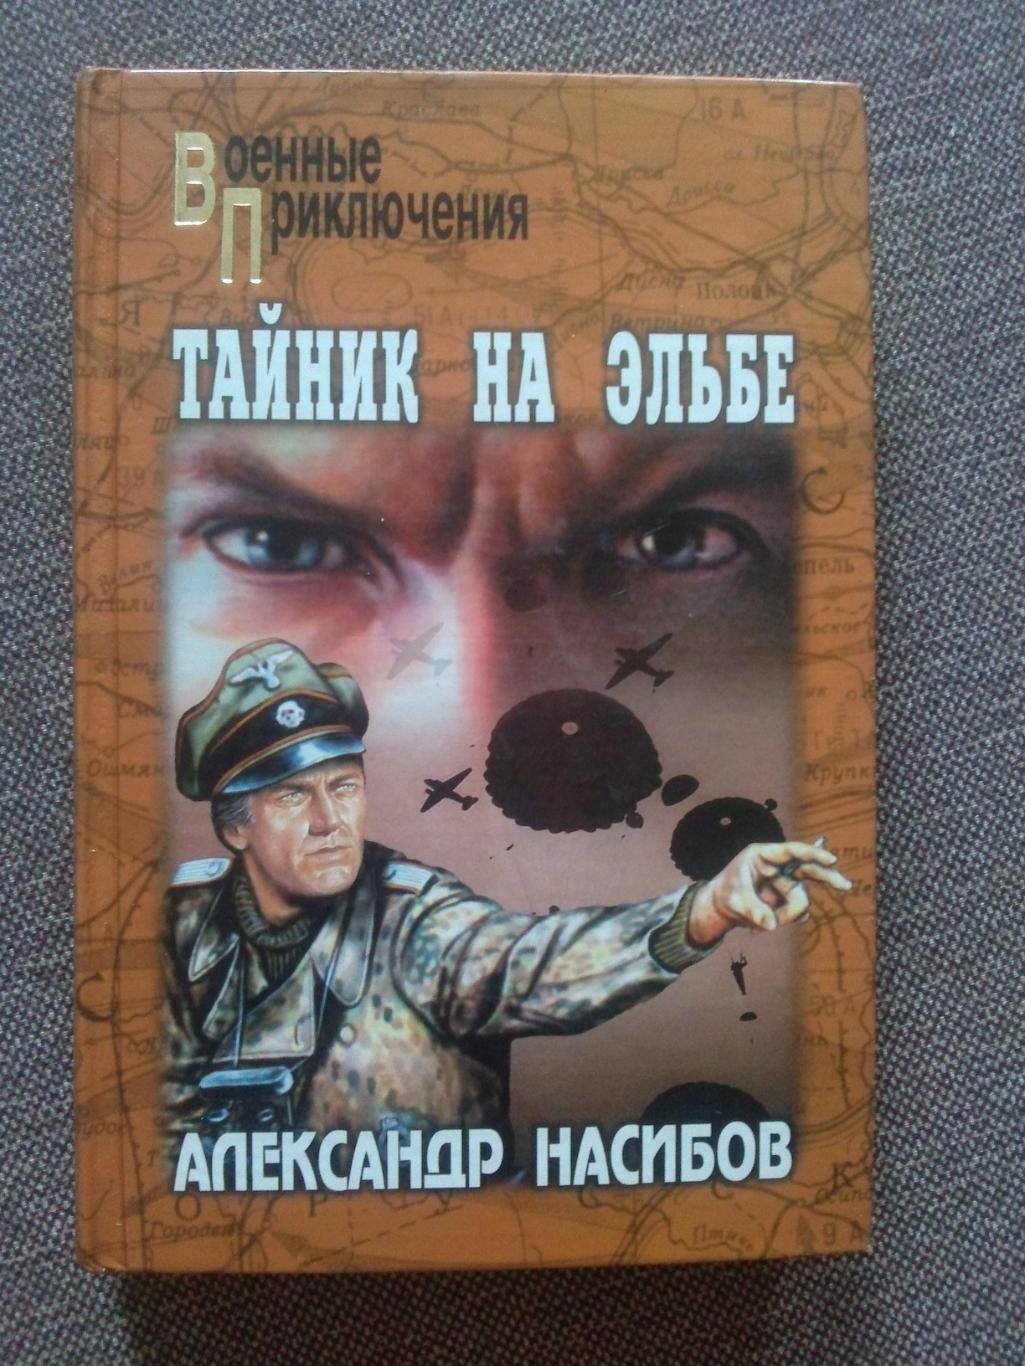 Серия Военные приключения - Александр Насибов - Тайник на Эльбе (Война)